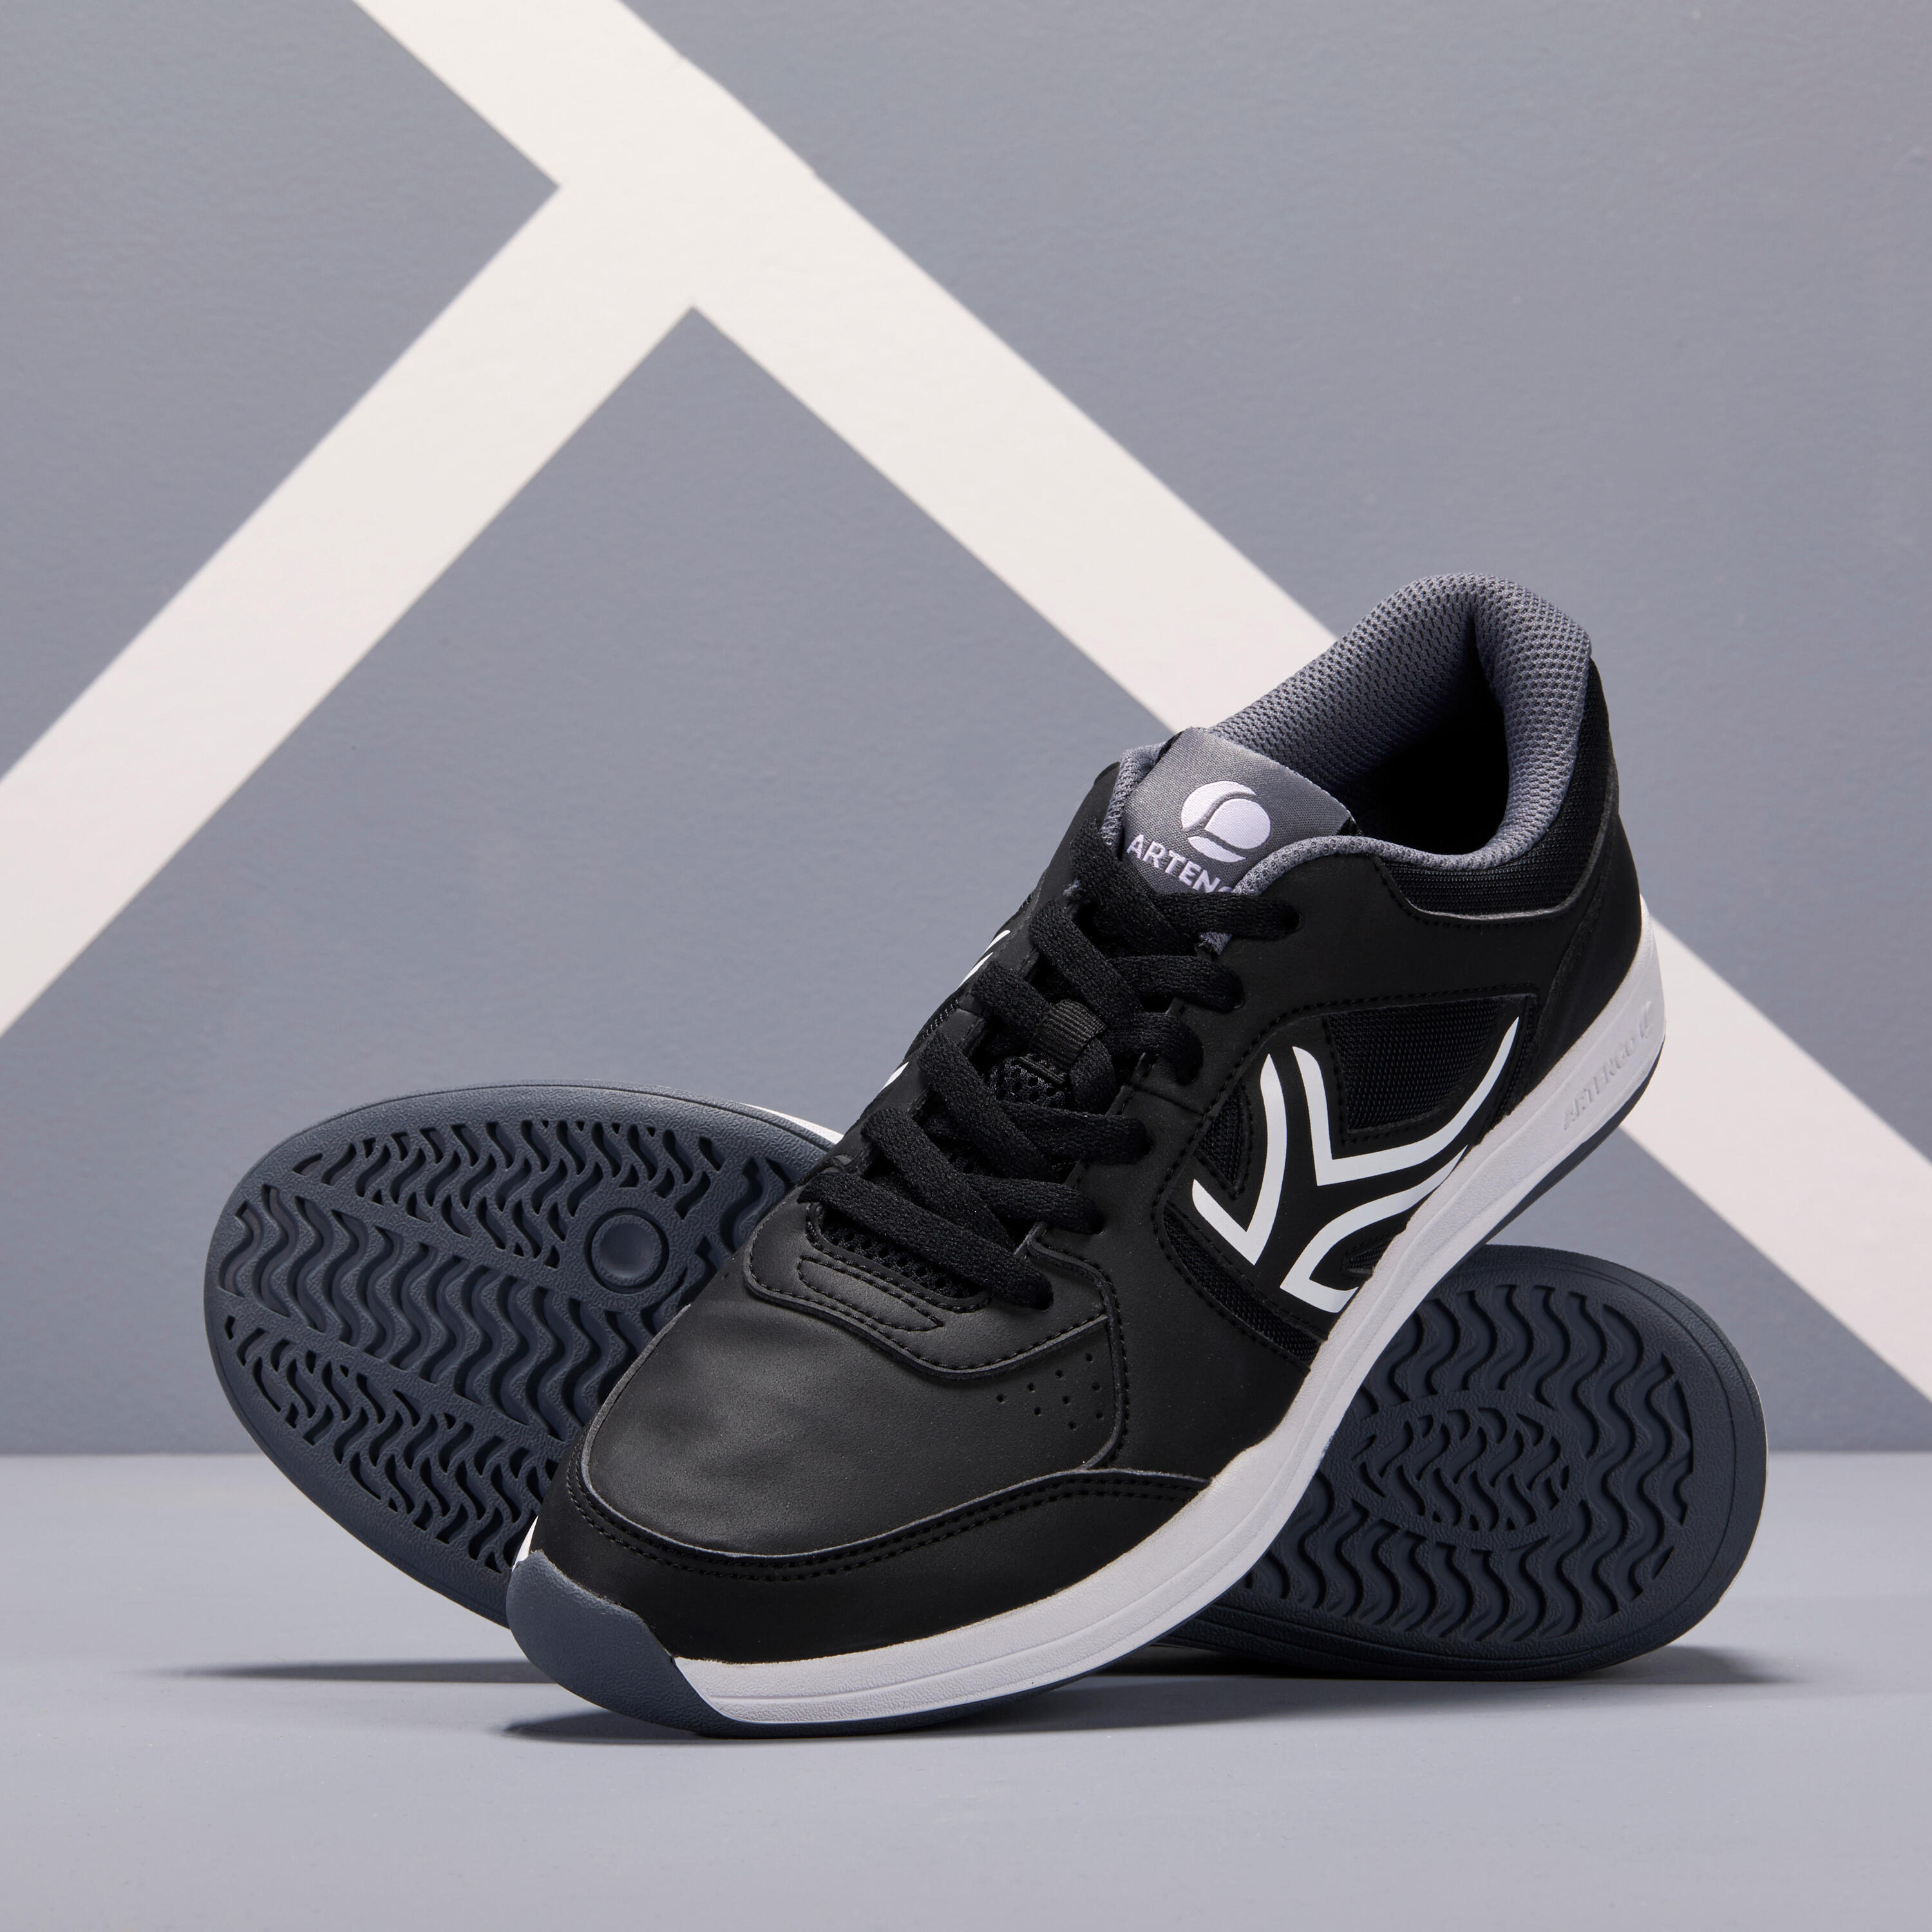 TS130 Multicourt Tennis Shoes - Black 1/9